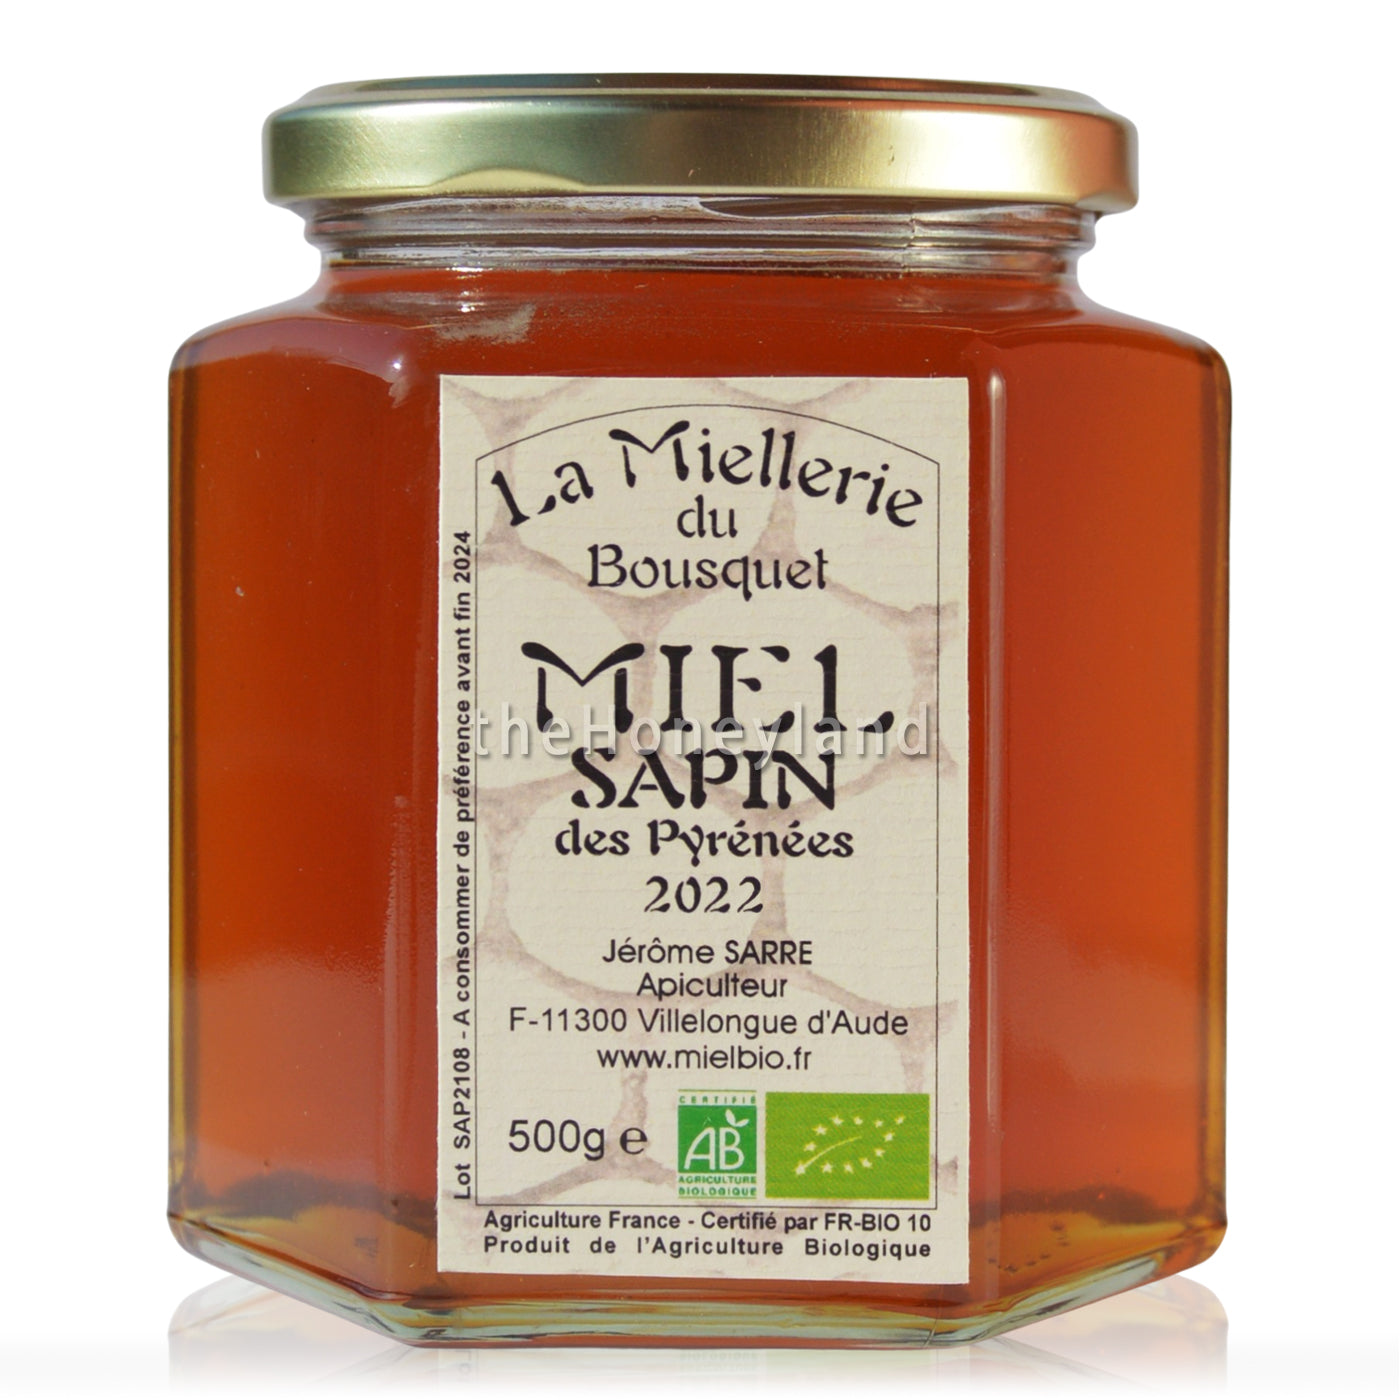 Organic fir honeydew from the Pyrenees